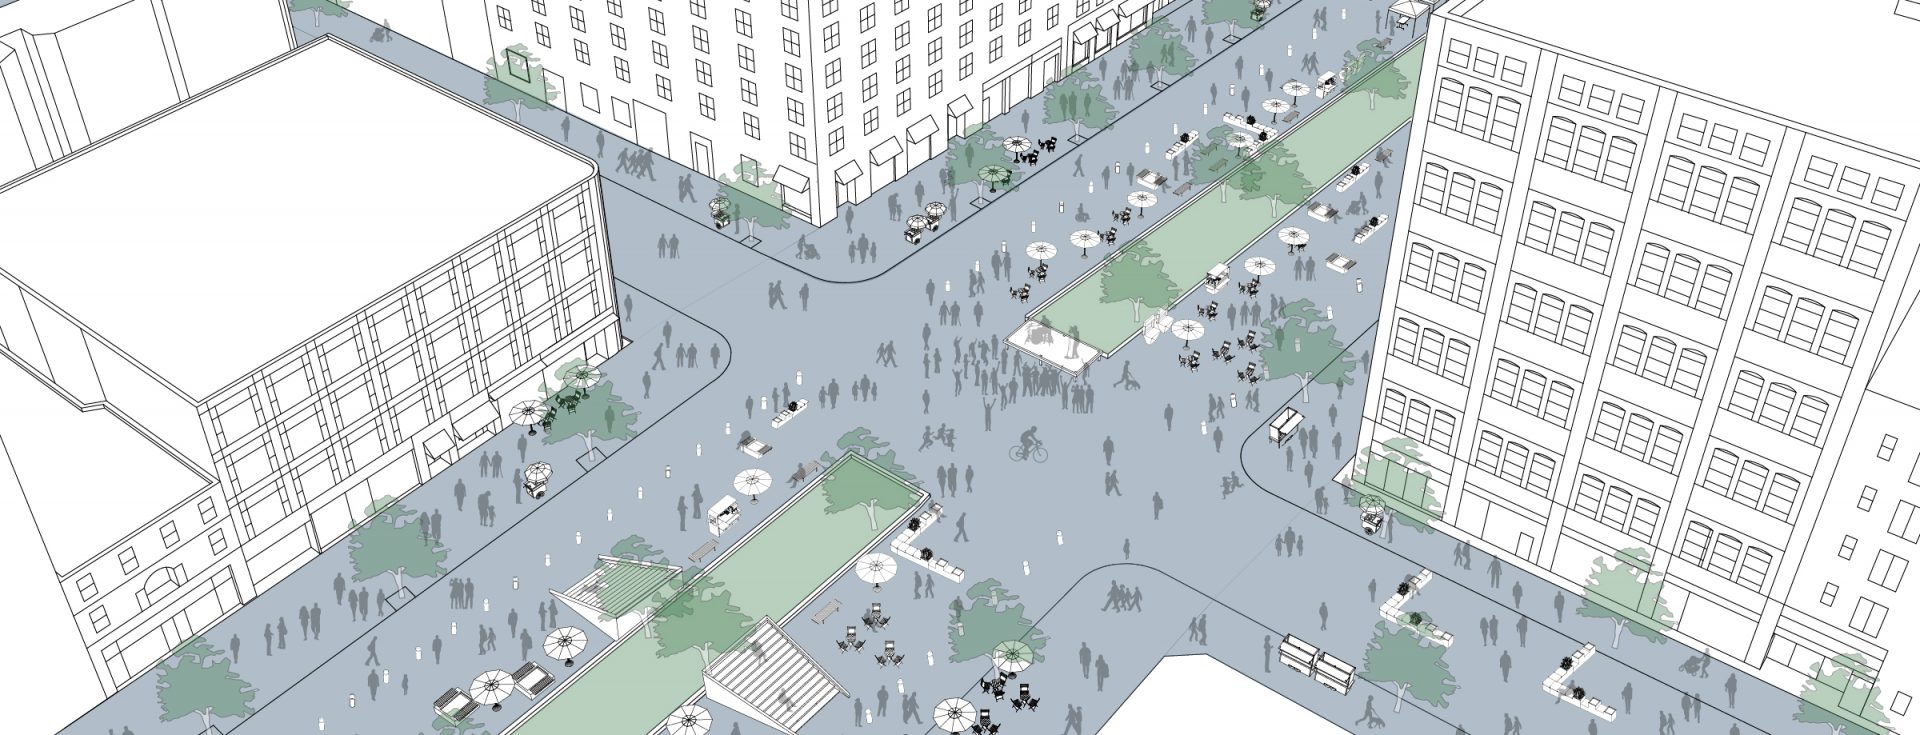 Street Plans to Temporarily Transform Market Street in Poughkeepsie, NY